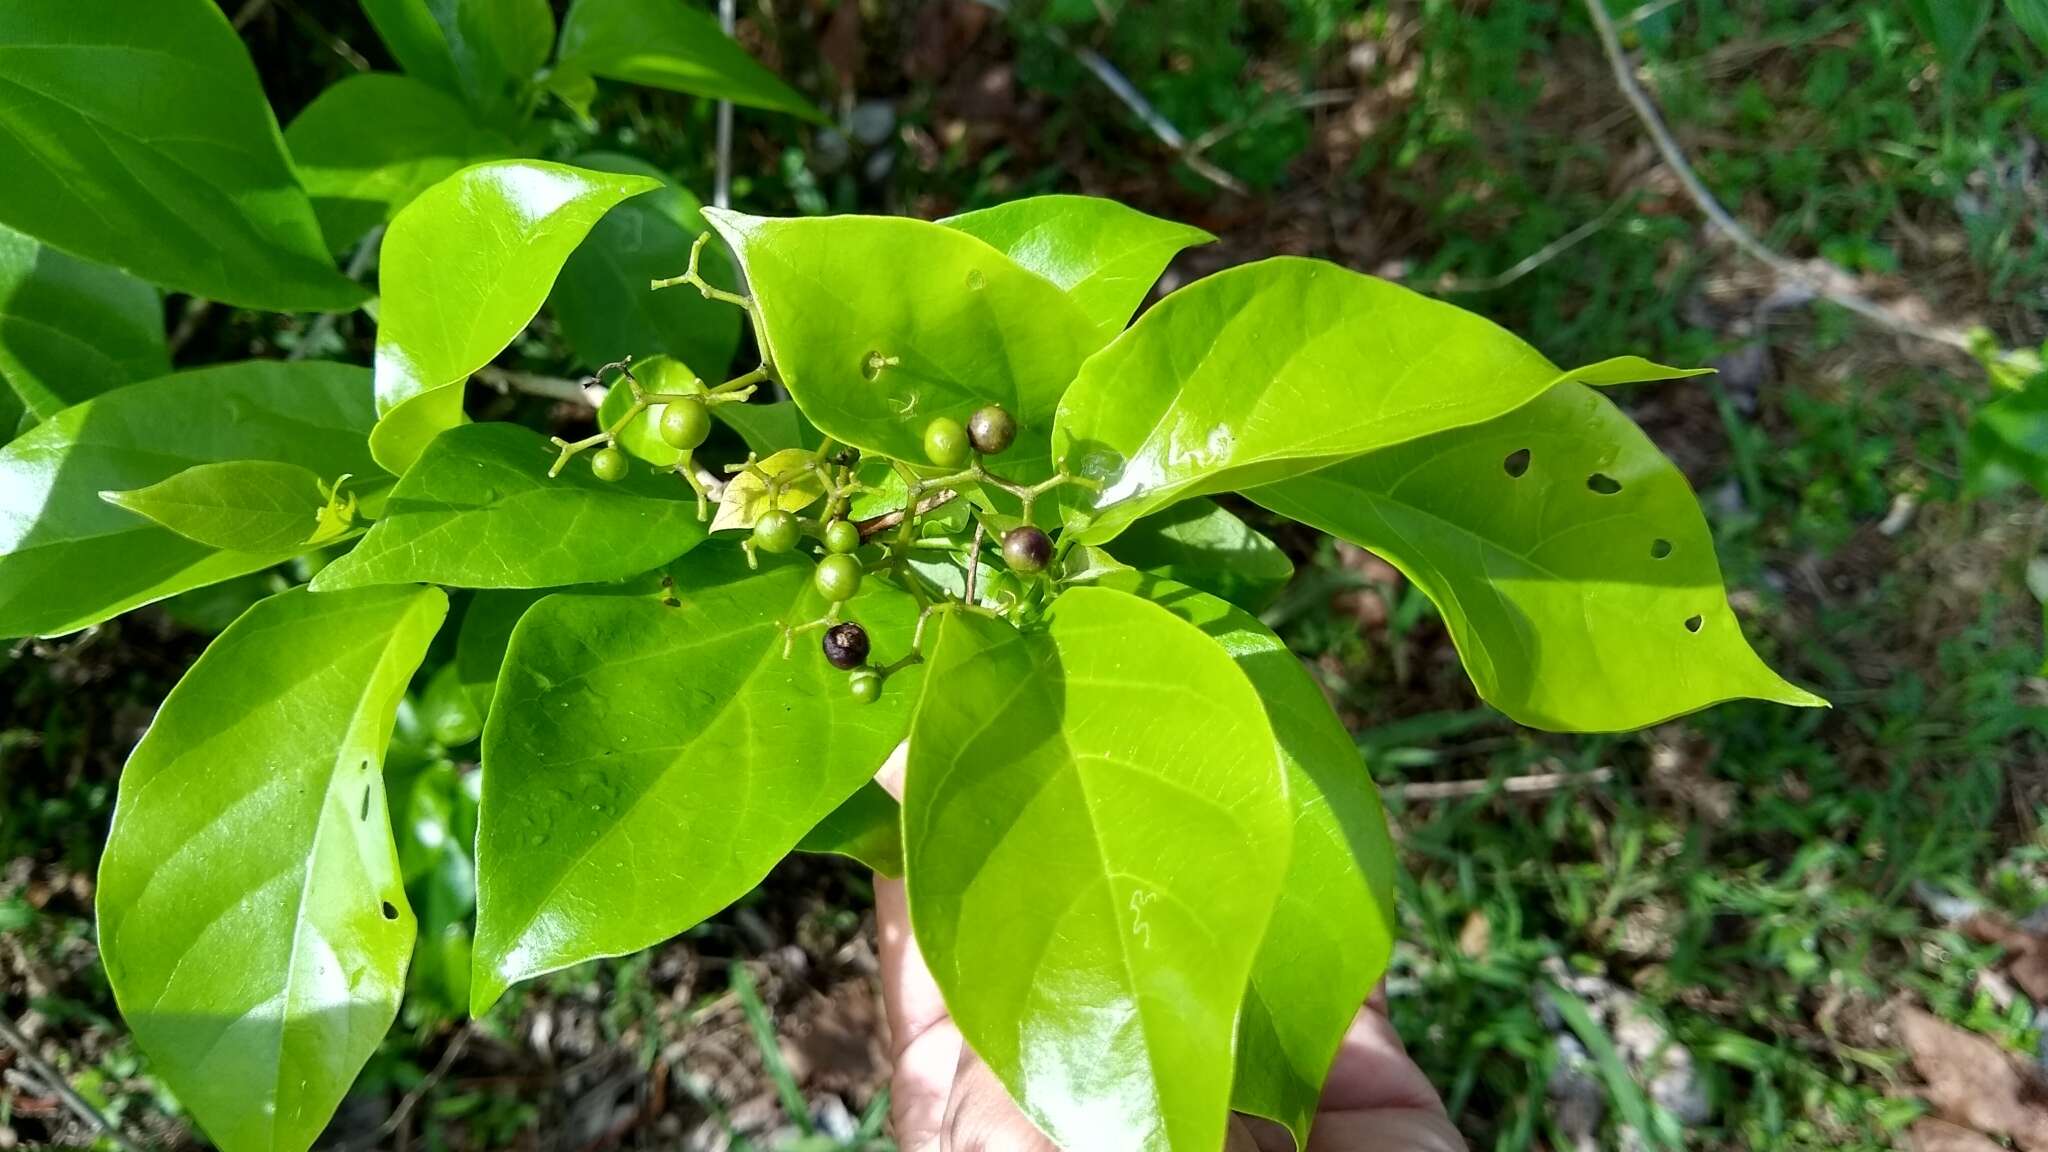 Image of Premna obtusifolia R. Br.